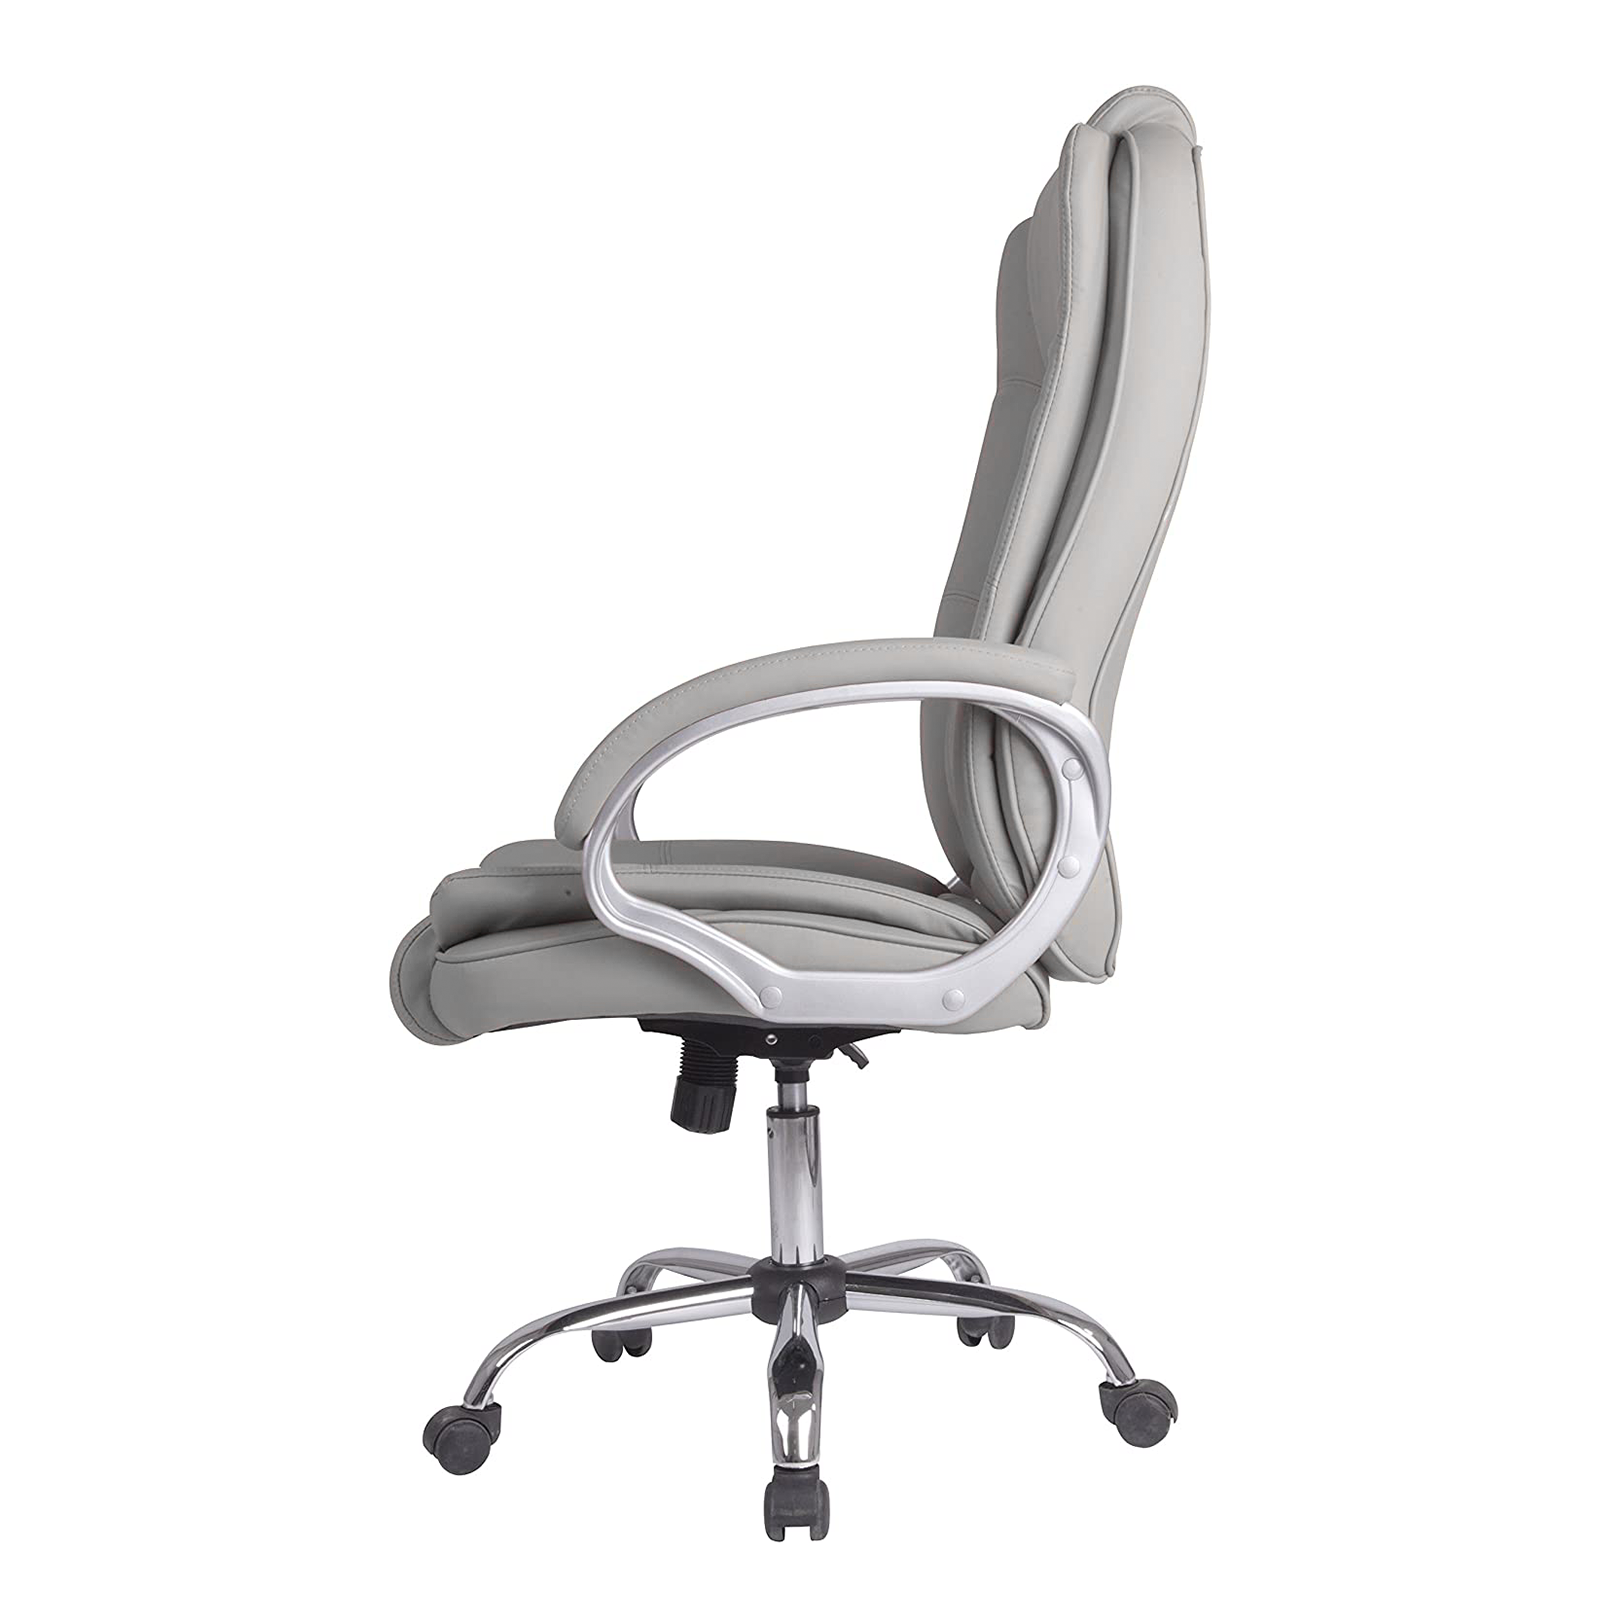 Chaise de bureau pivotante HW58635, fauteuil de direction avec roulettes et support de jeu